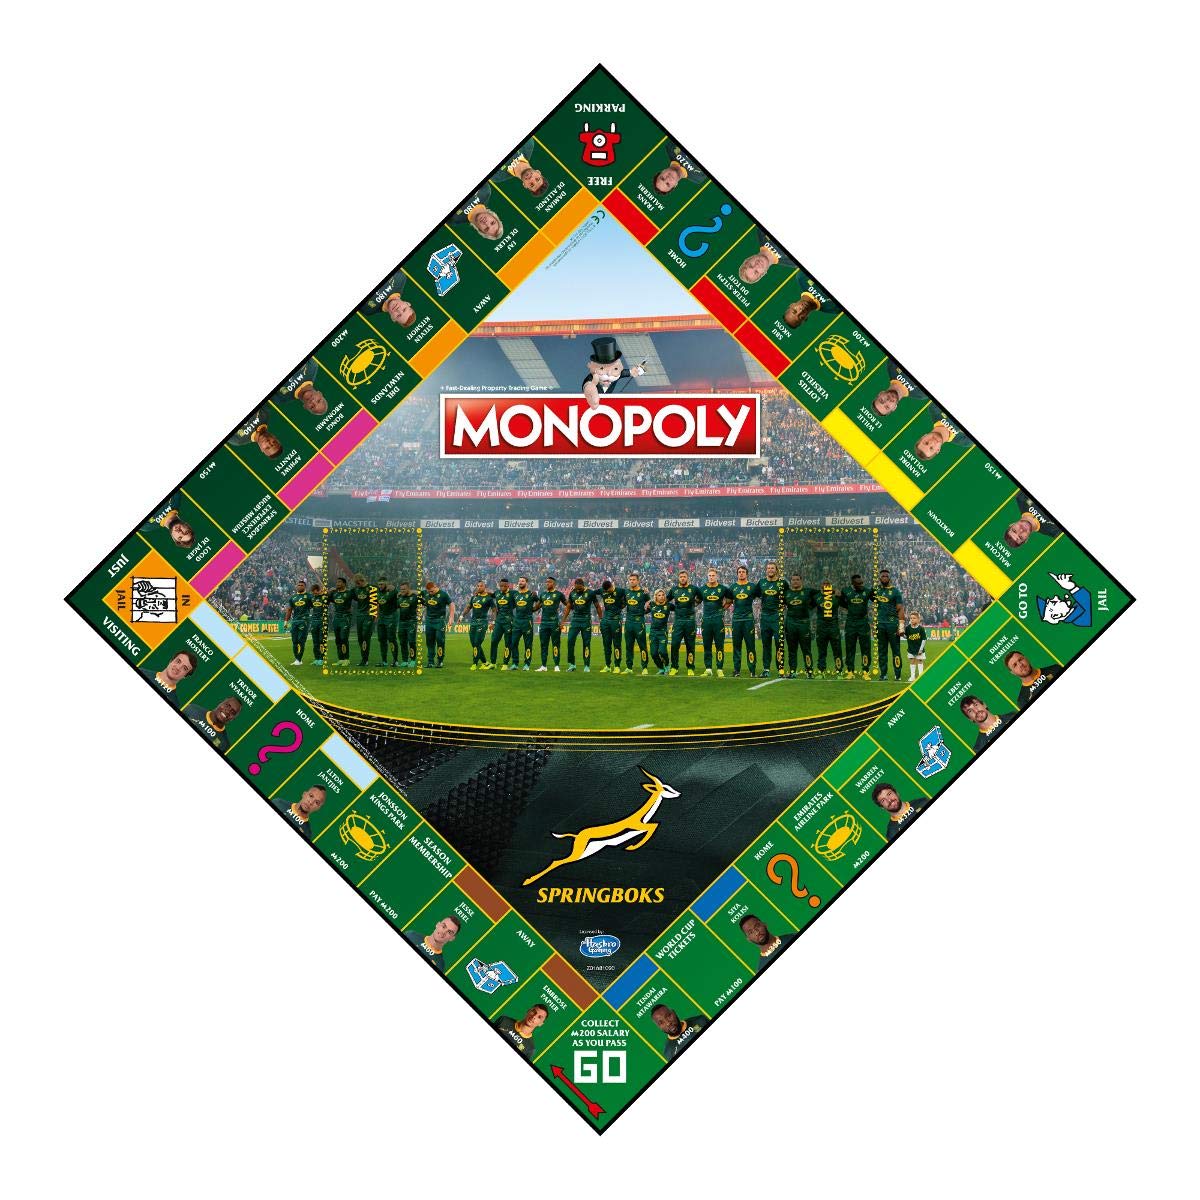 Monopoly Springboks Black Board Game